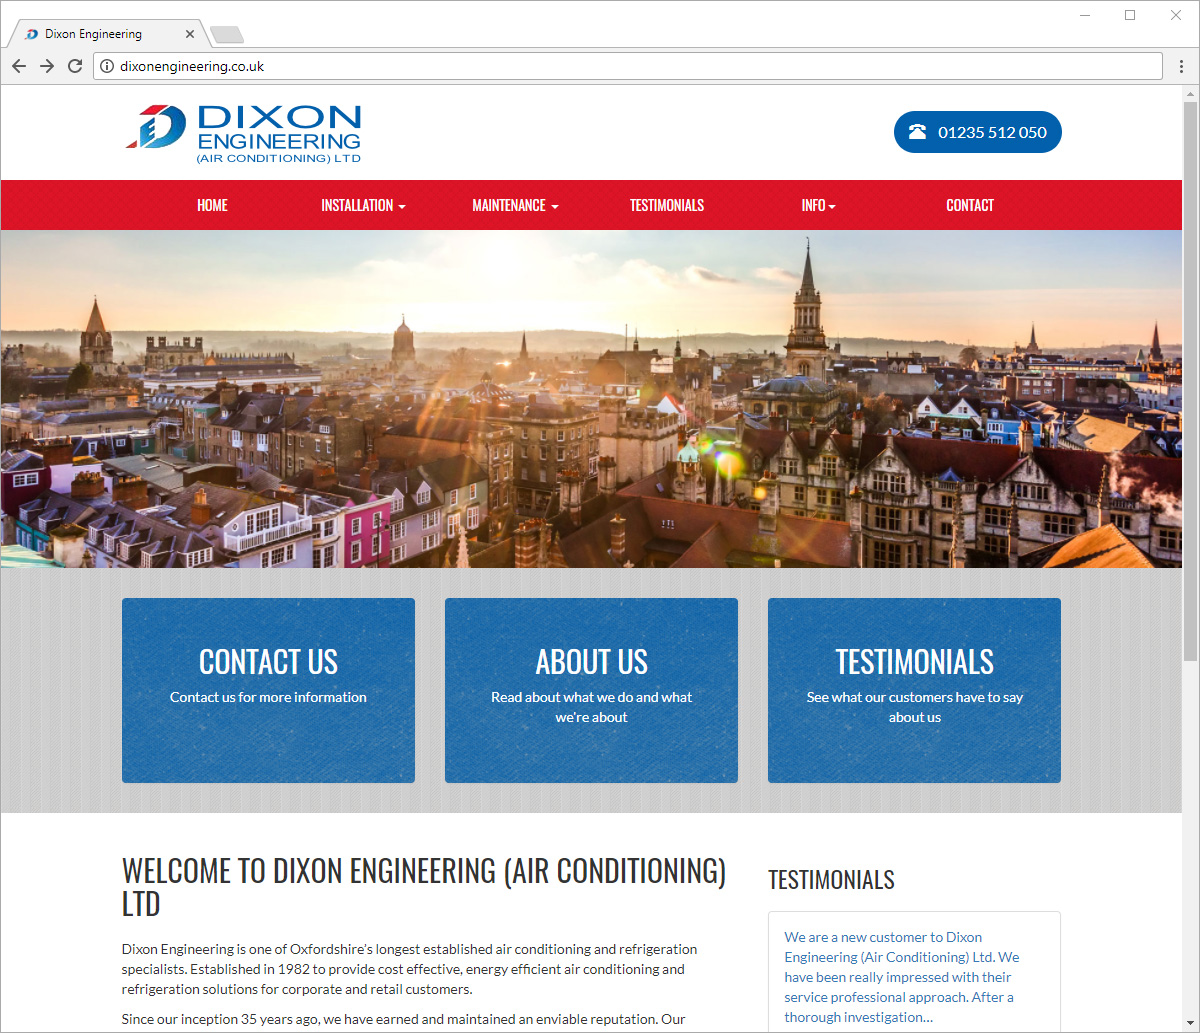 Computer screen preview of Dixon Engineering website